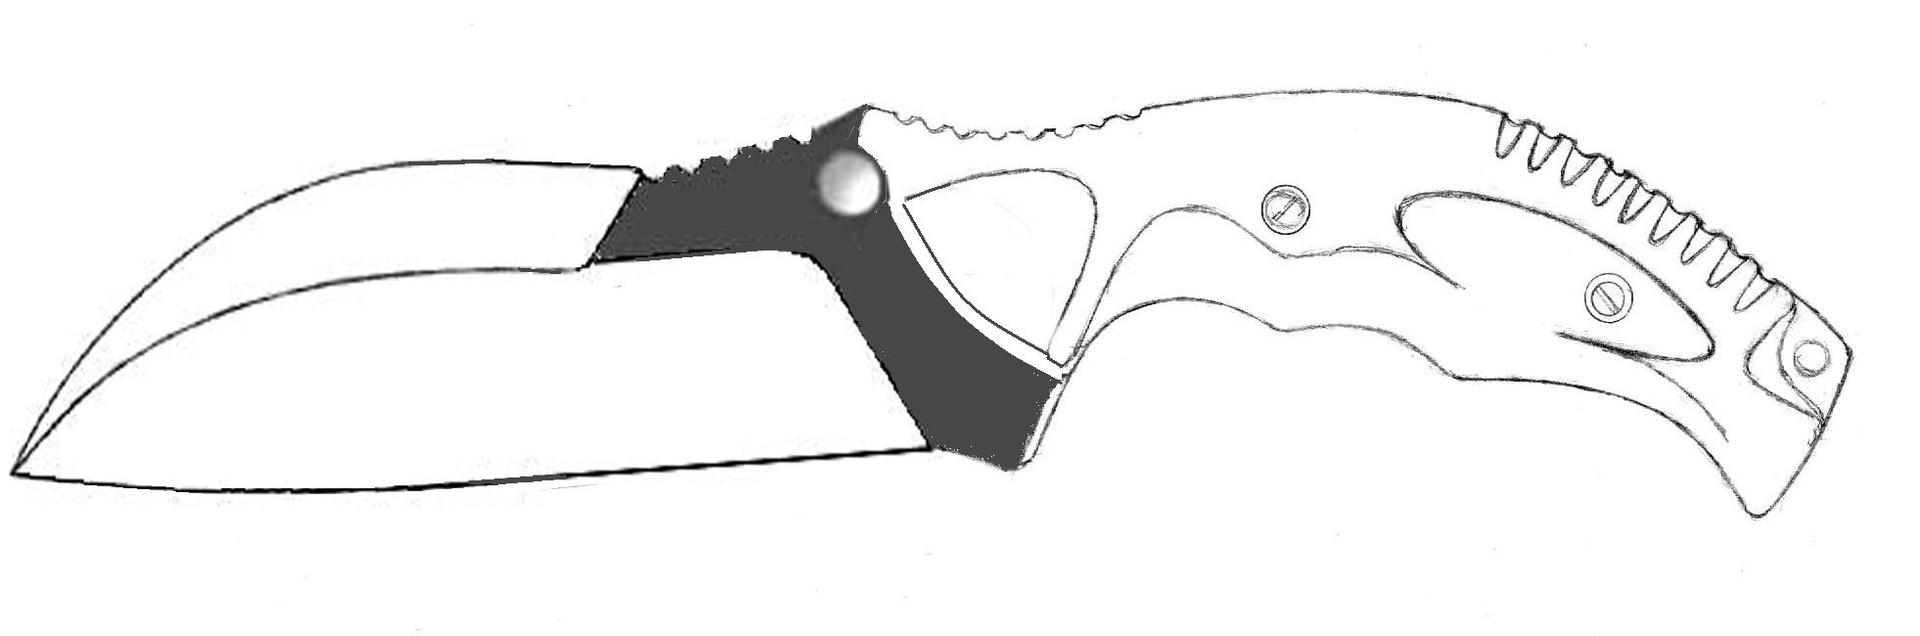 Нож контурный рисунок